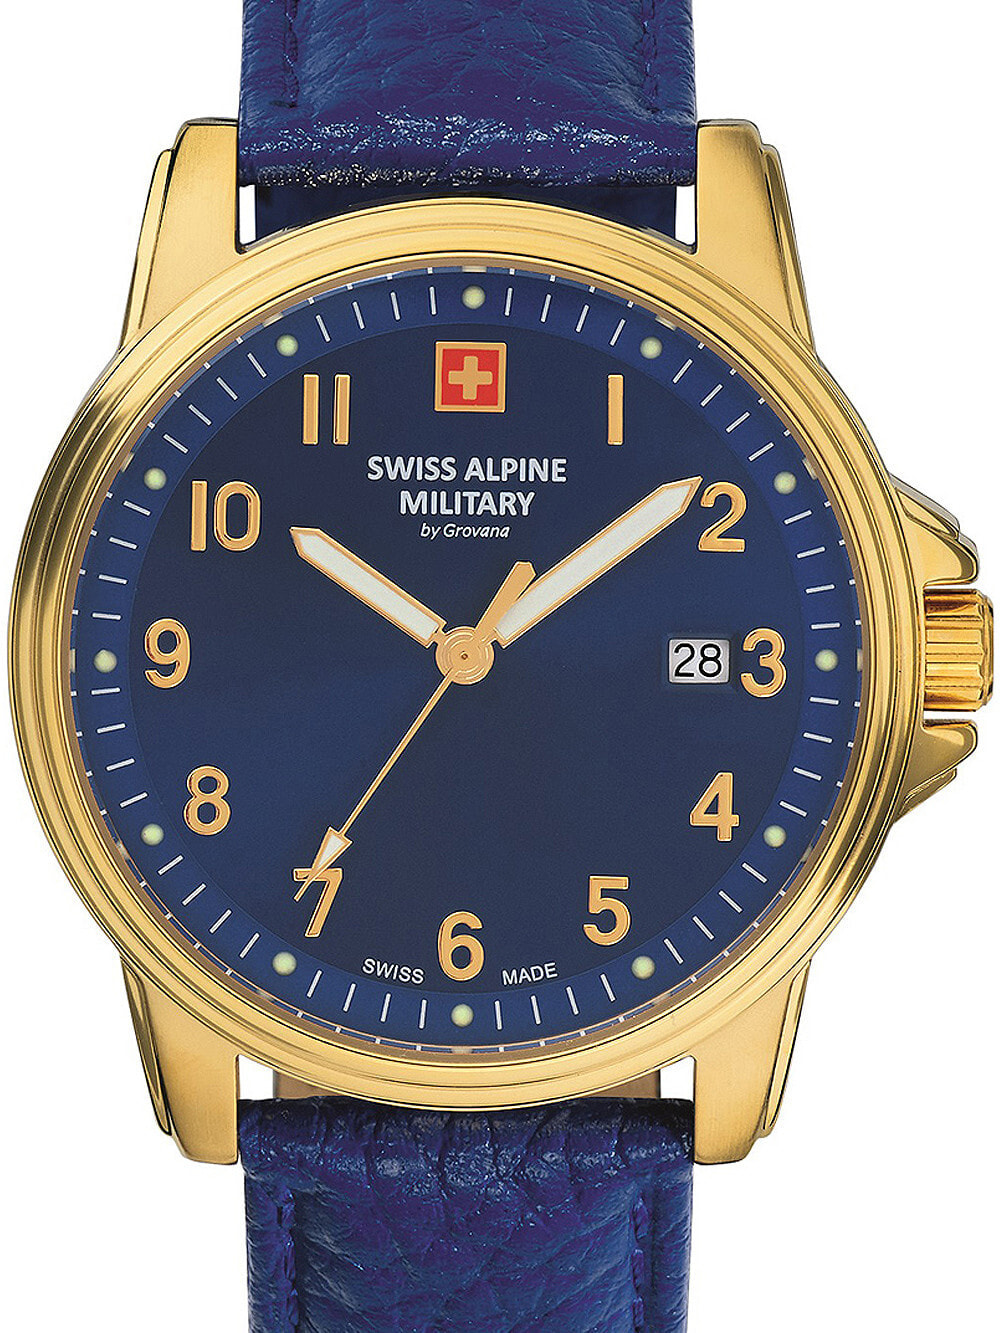 Мужские наручные часы с синим кожаным ремешком Swiss Alpine Military 7011.1515 mens 40mm 10ATM